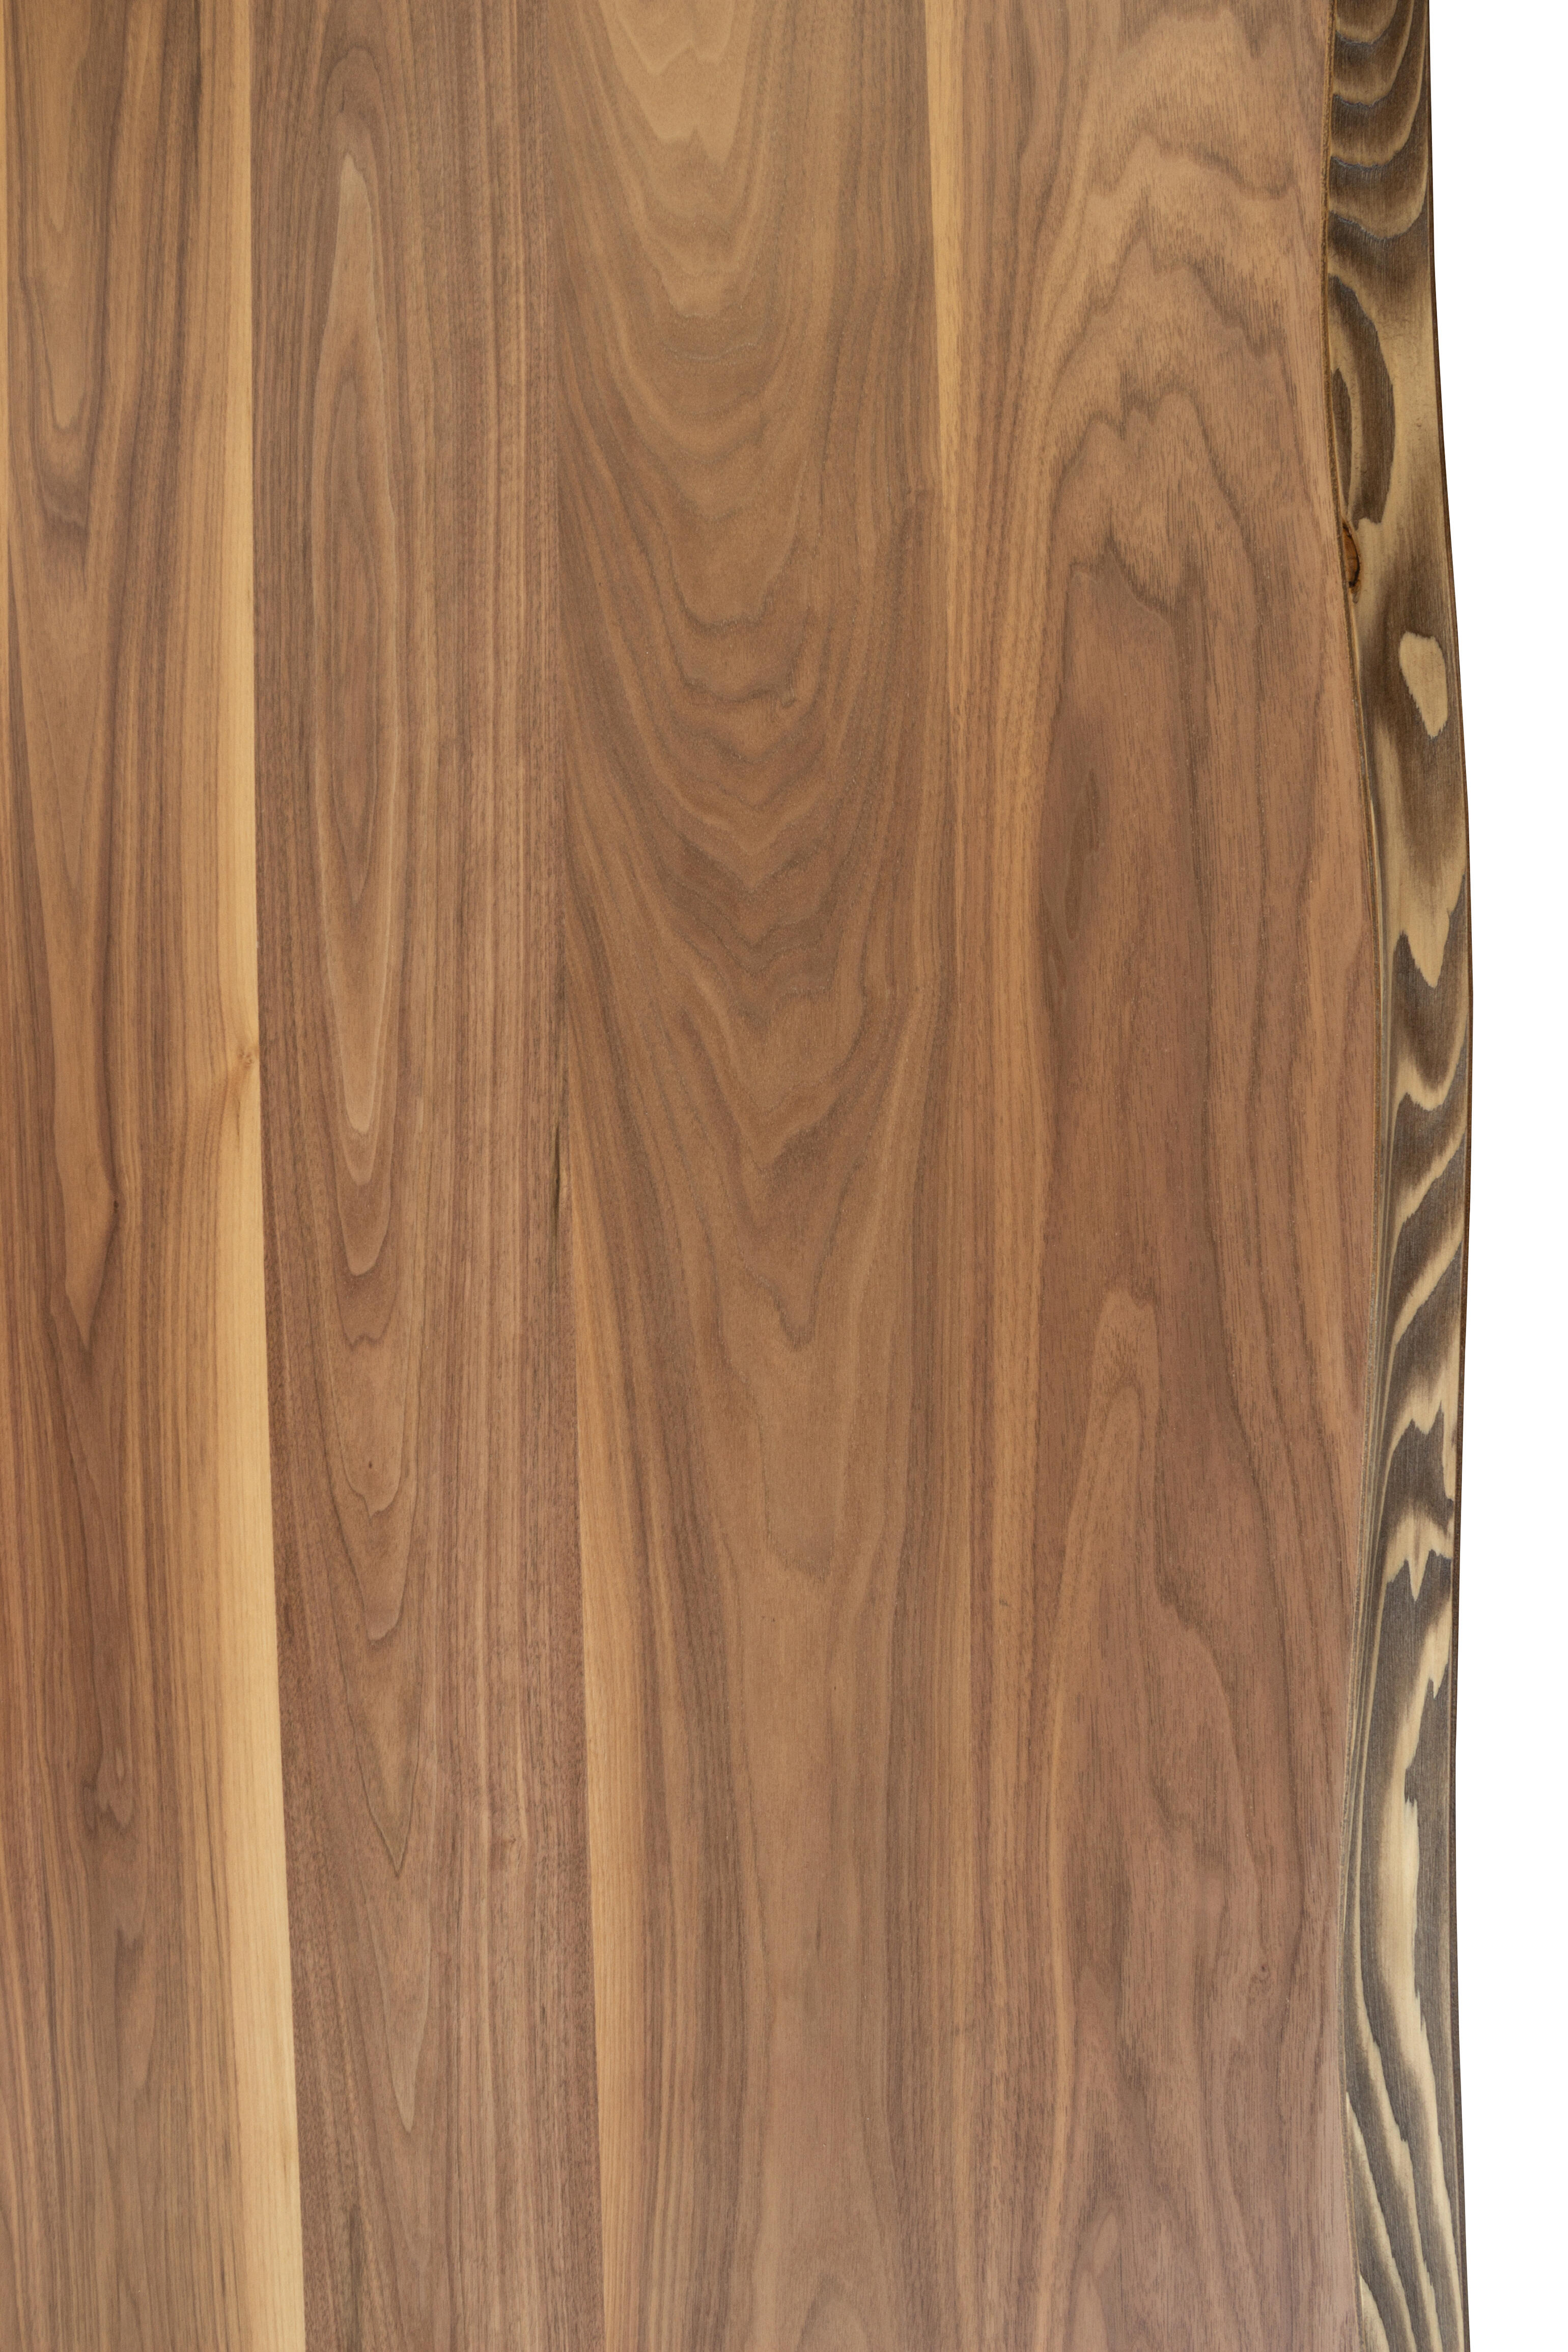 Tablero para mesa rechapado en madera de nogal 80x120x4,8 cm lados forma árbol